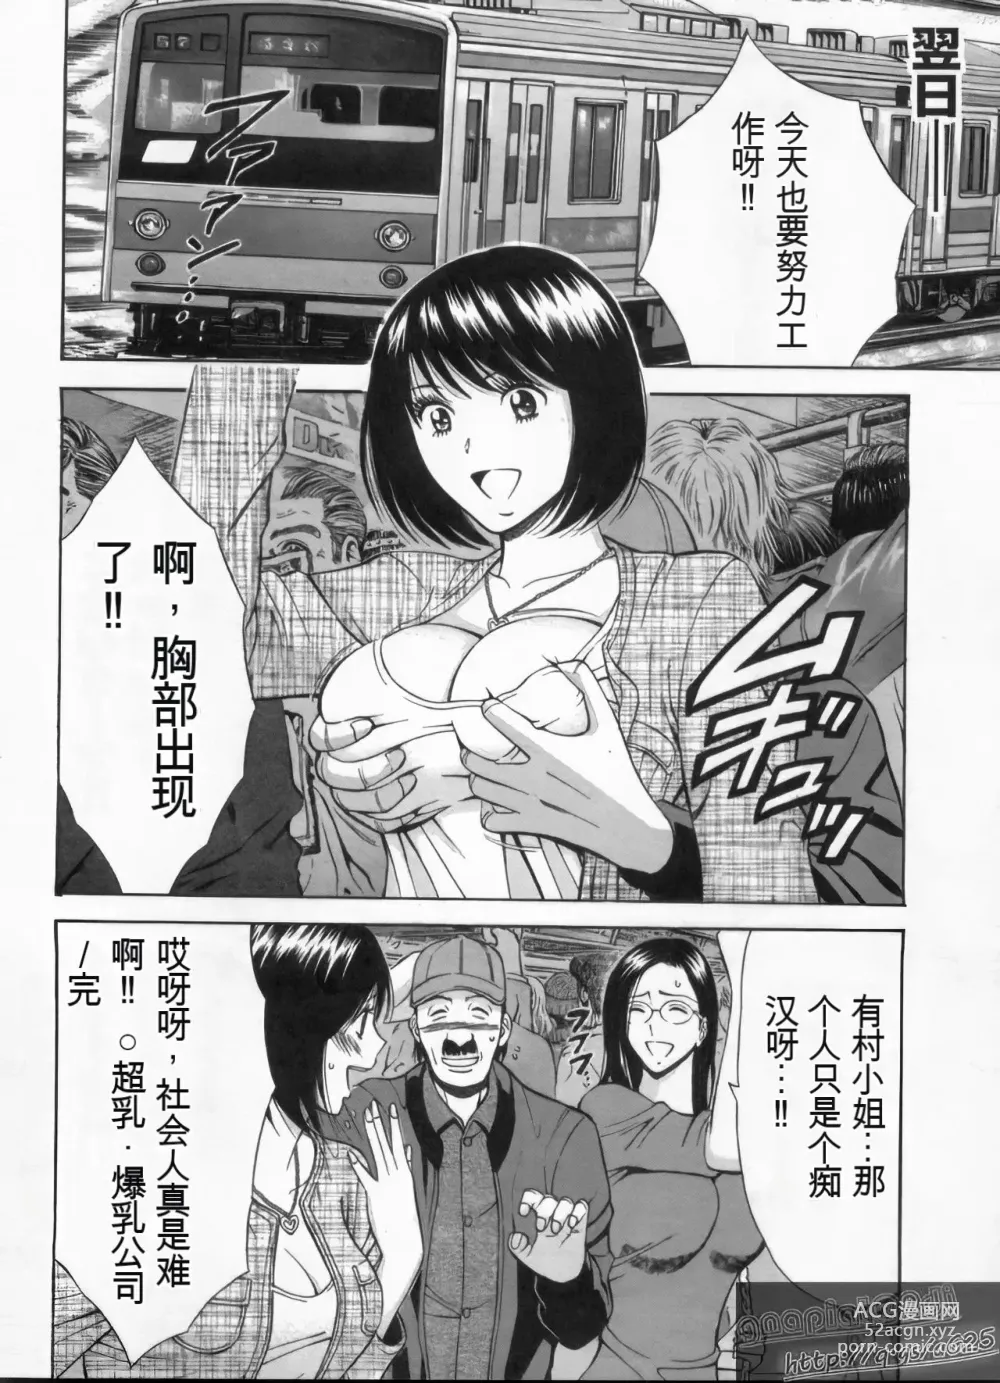 Page 171 of manga Chounyuu Bakunyuu Kabushikigaisha